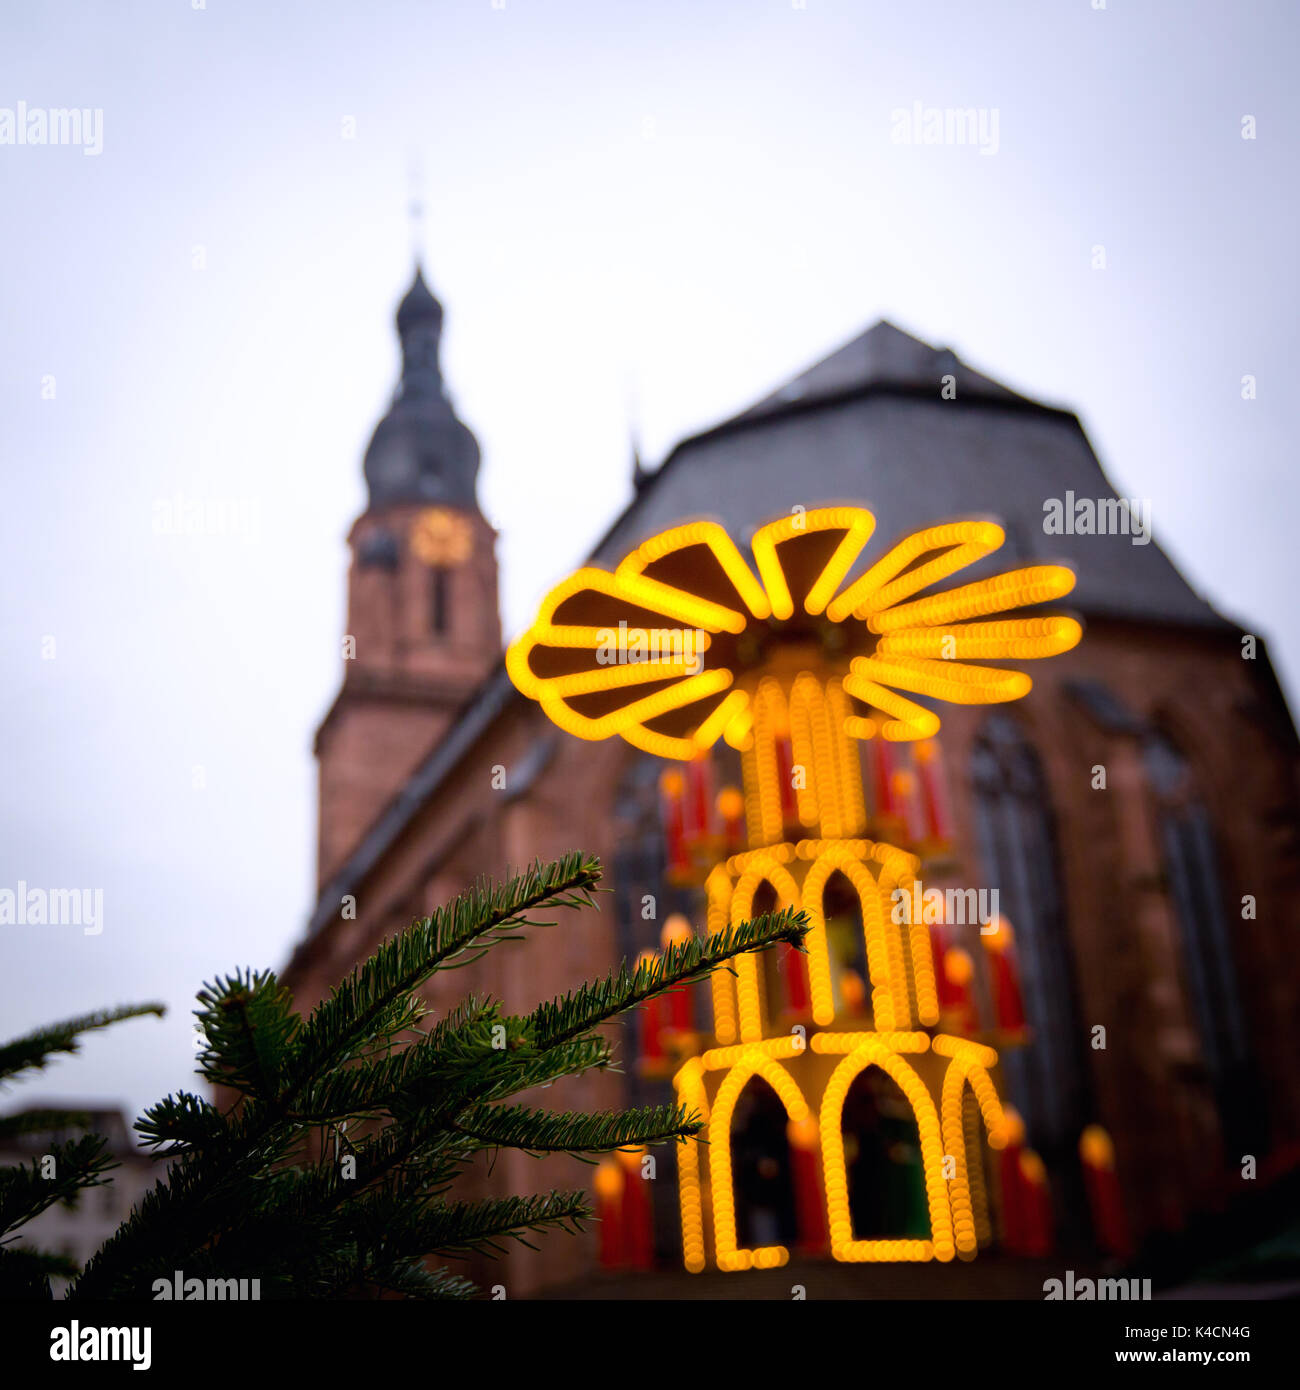 Mercado de Navidad en la heiliggeistkirche en Heidelberg con la pirámide de navidad Foto de stock